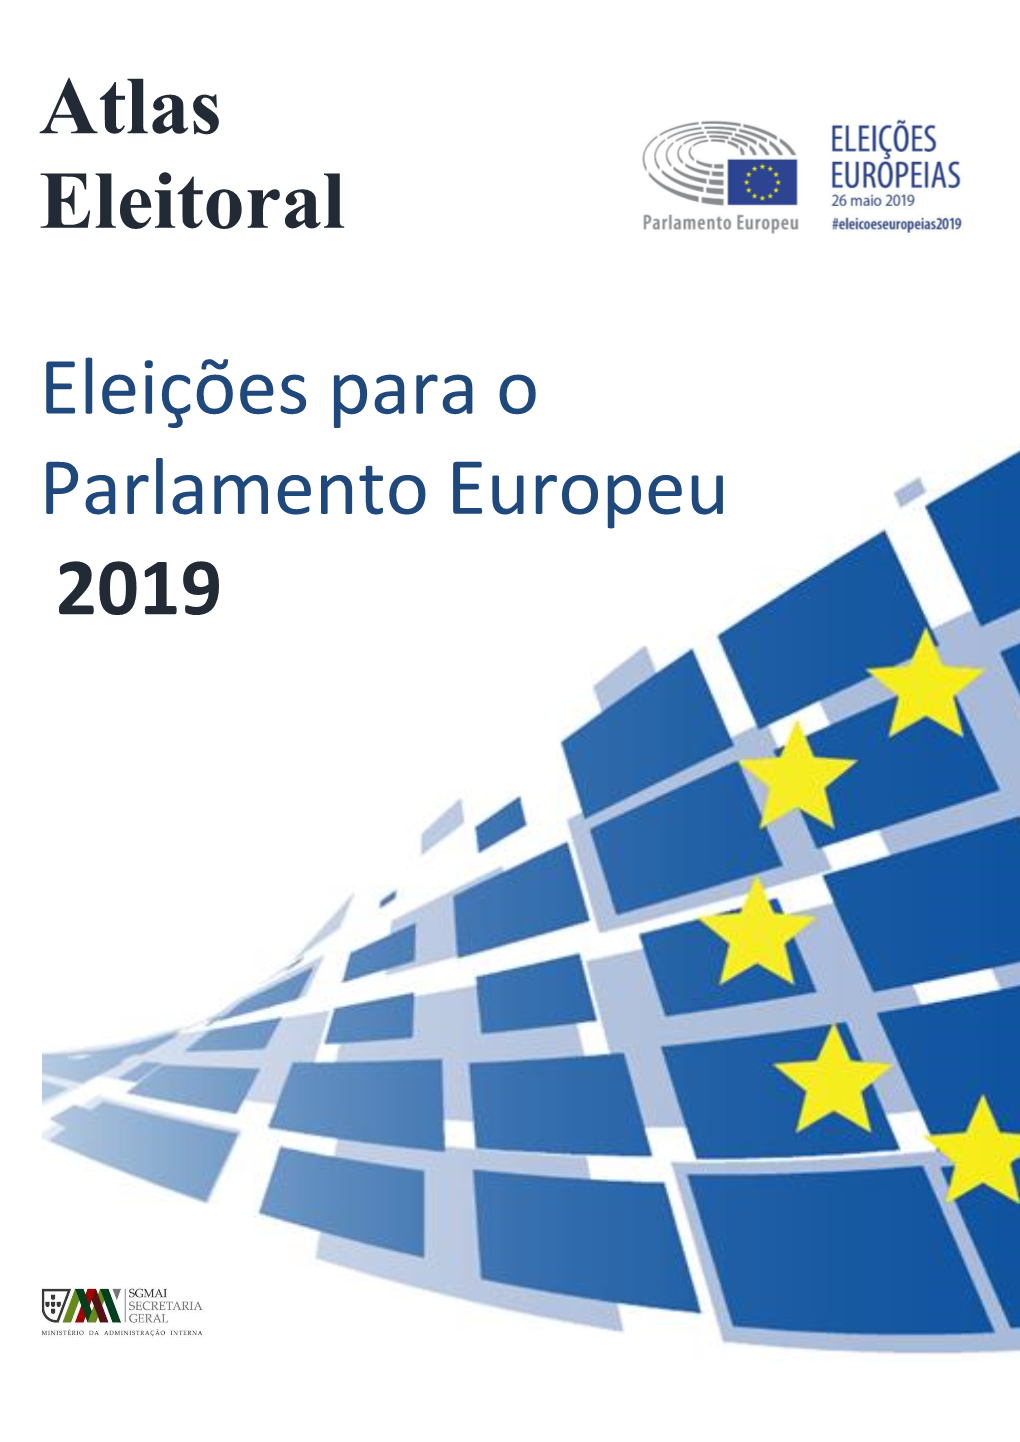 Atlas Eleitoral Eleições Para O Parlamento Europeu 2019